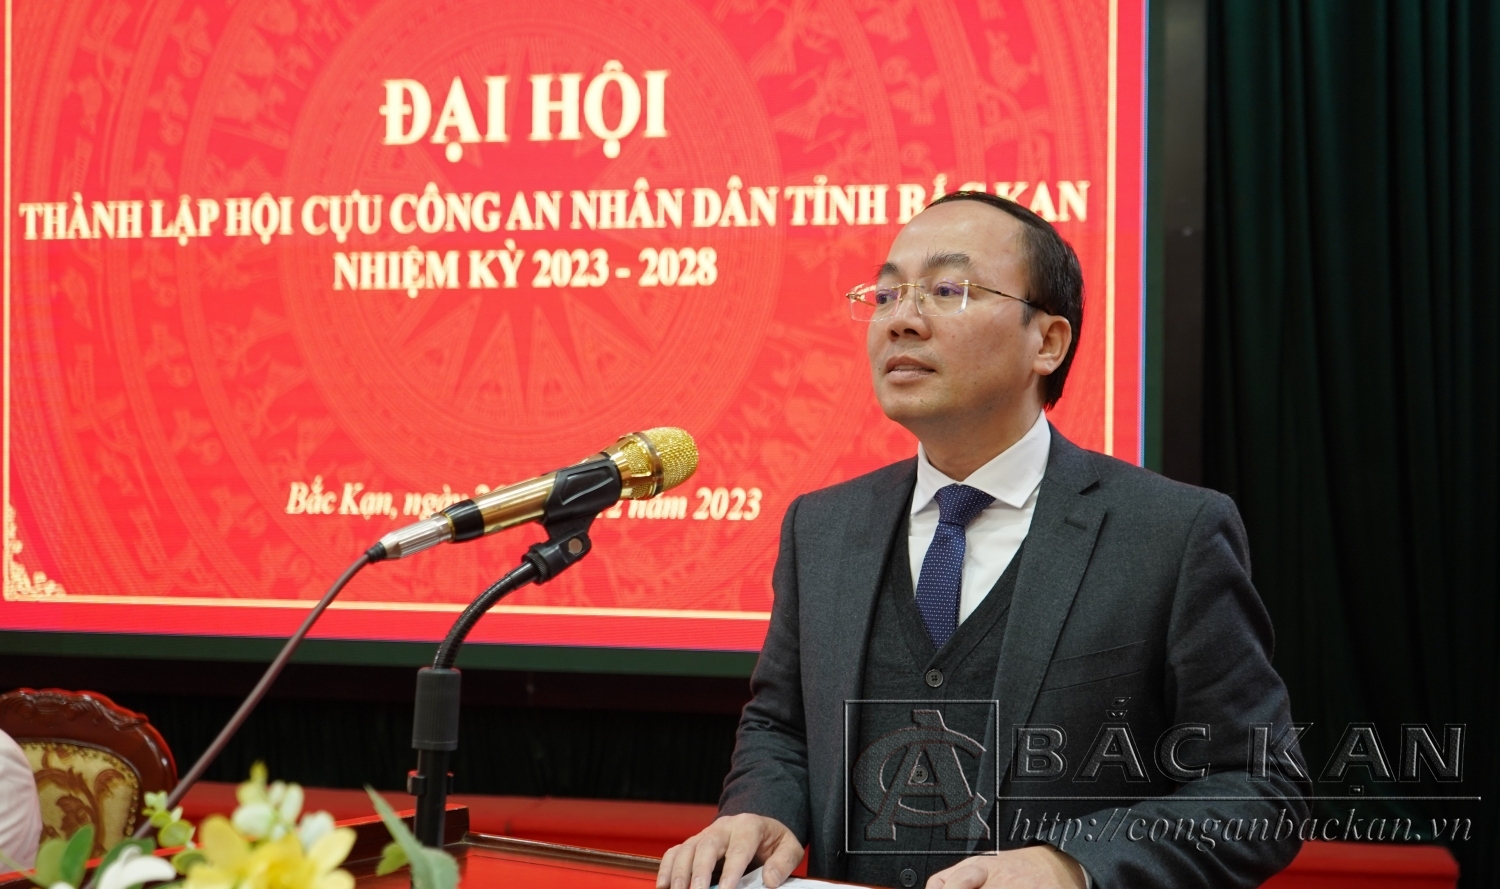 Đồng chí Nguyễn Đăng Bình, Phó Bí thư Tỉnh ủy, Chủ tịch Ủy ban nhân dân tỉnh Bắc Kạn phát biểu chỉ đạo